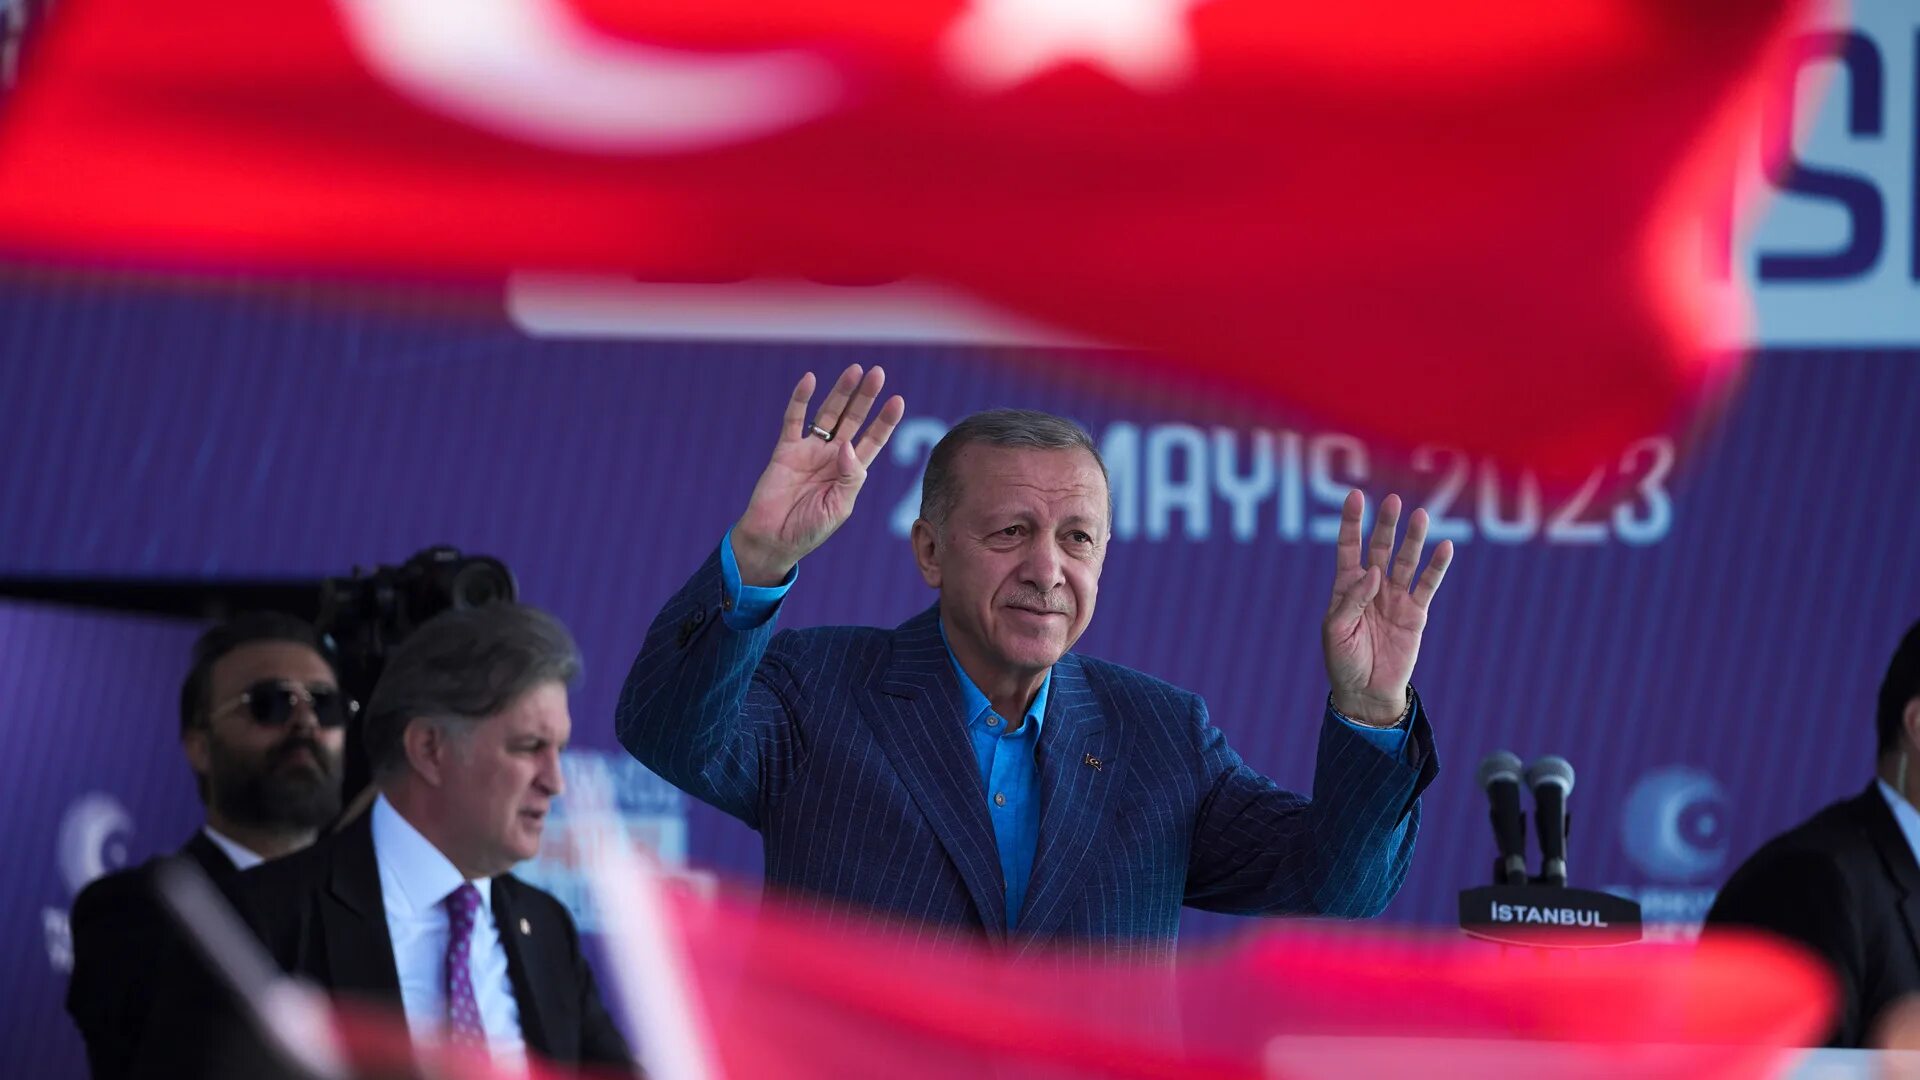 Выборы турции кто победит. Инаугурация президентский Турции 2023. Инаугурация Эрдогана 2023. Победа Эрдогана 2023 Турция.